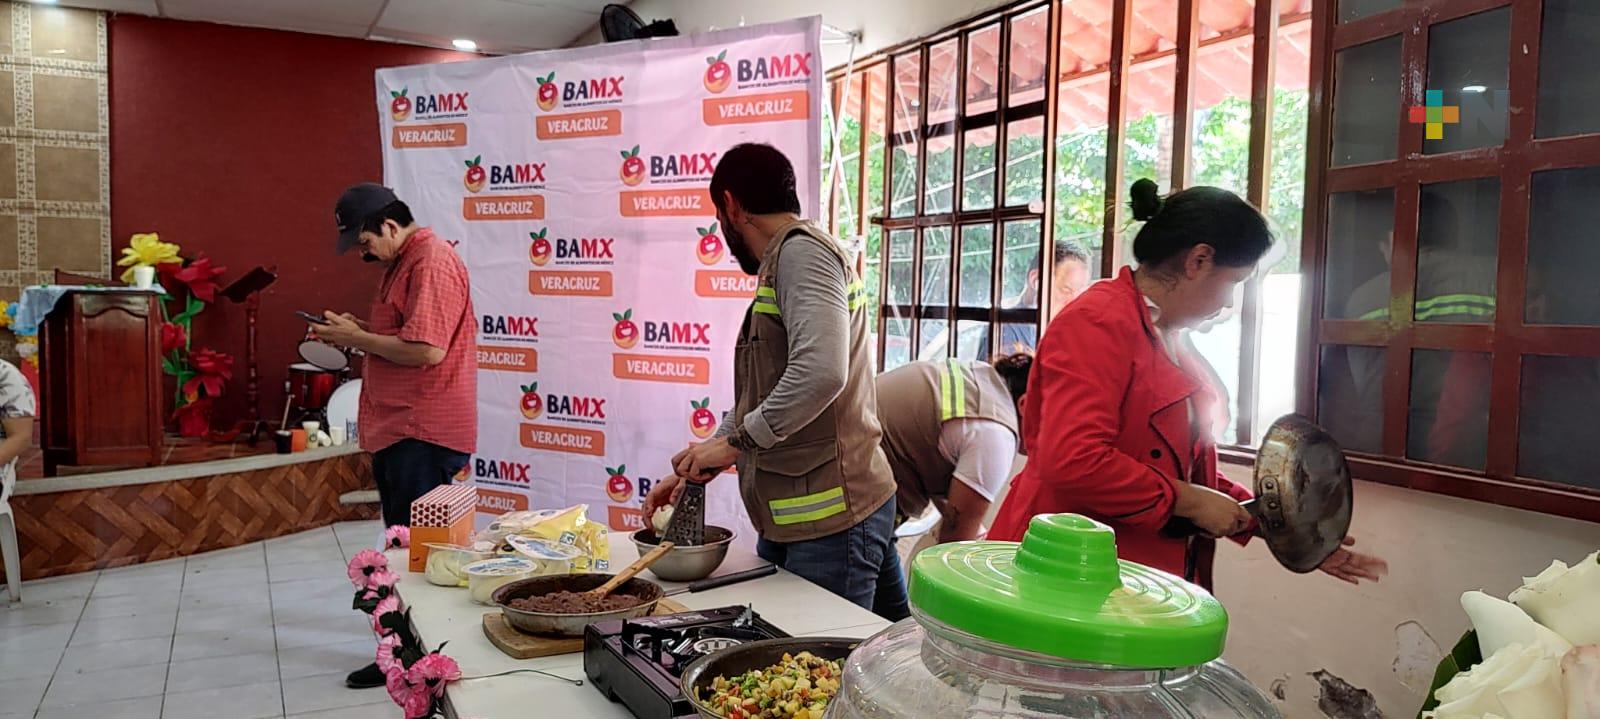 Organización mundial distribuye alimentos a familias vulnerables del municipio de Veracruz